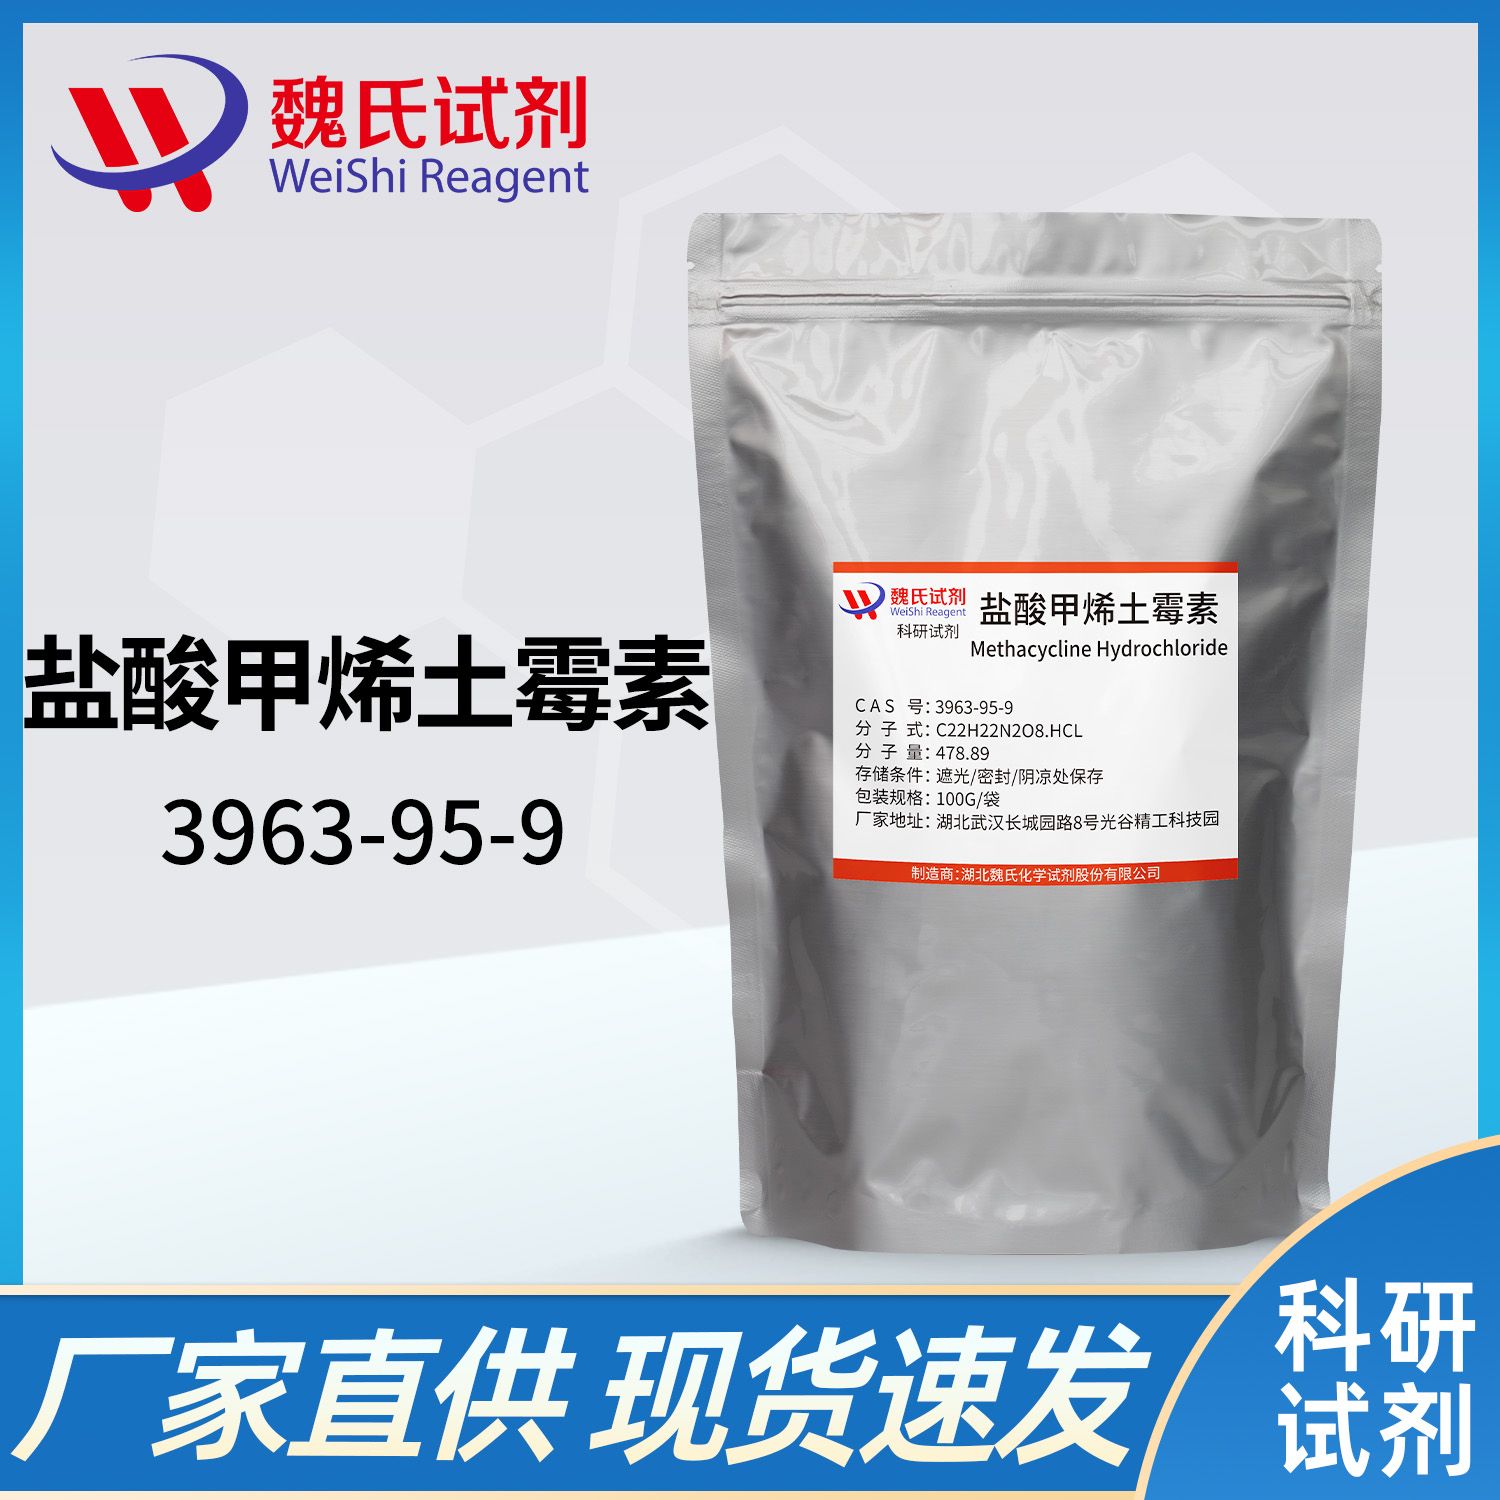 3963-95-9 /盐酸甲烯土霉素/Metacycline hydrochloride